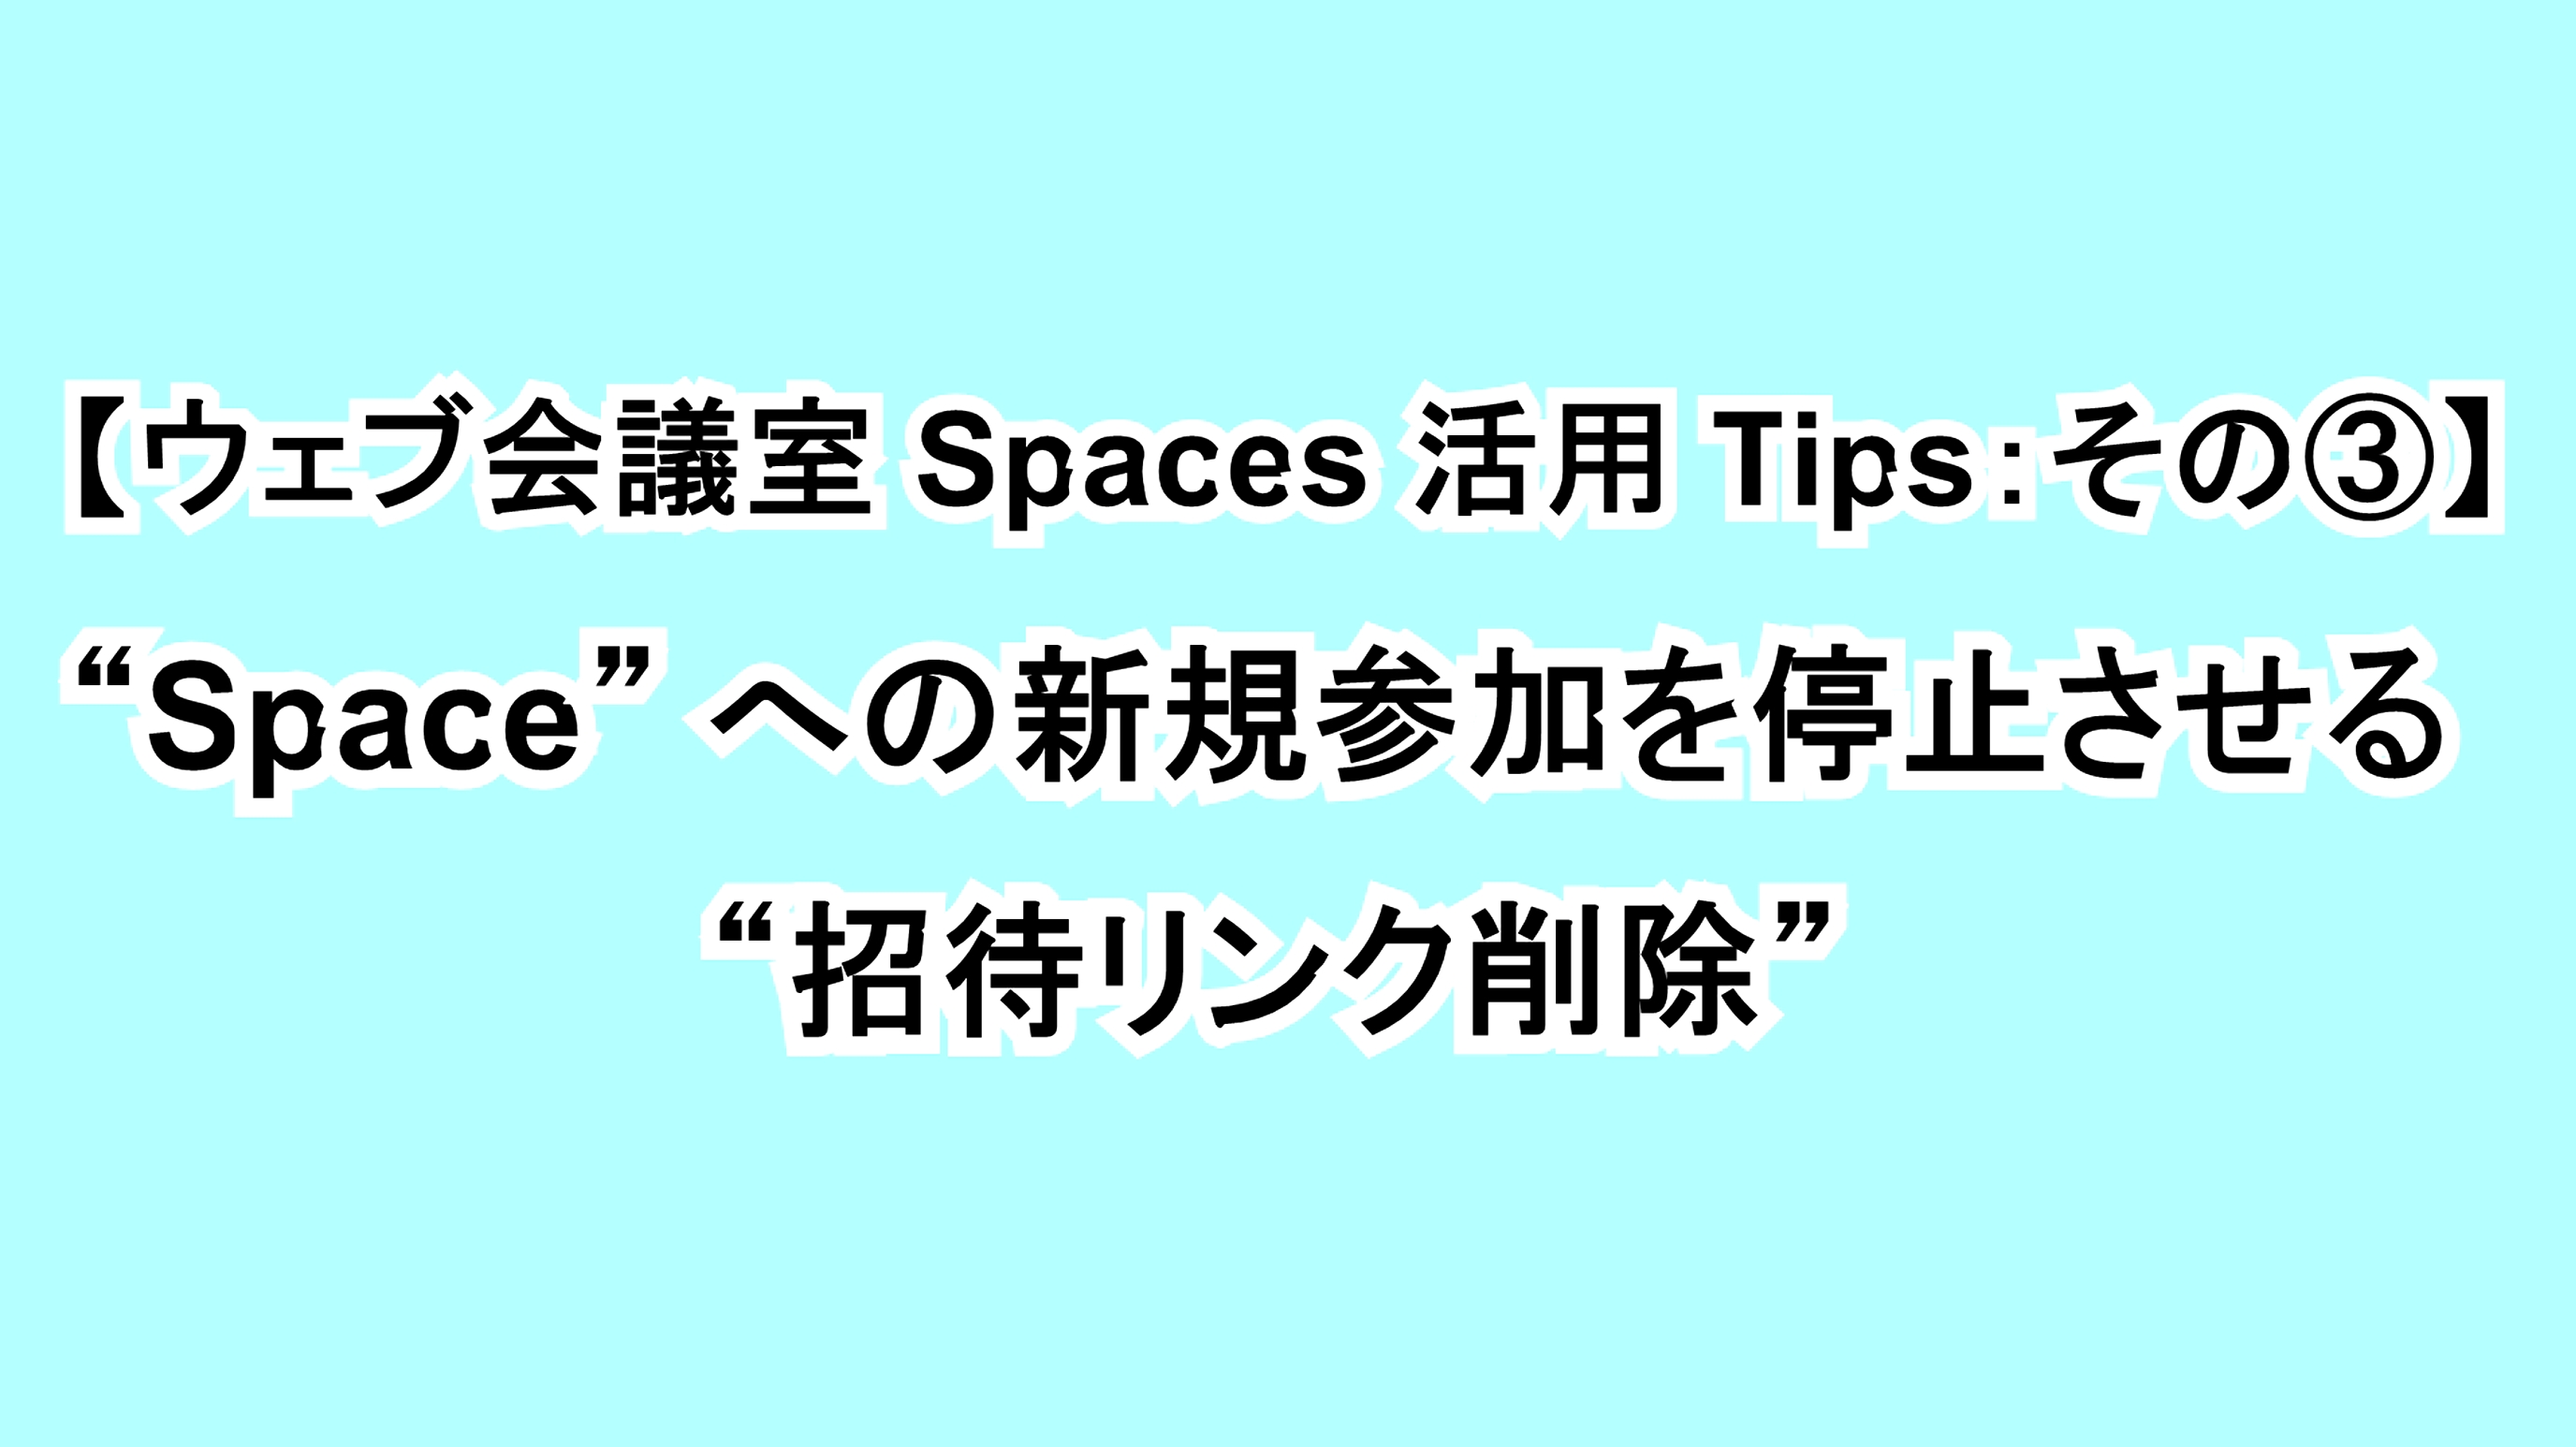 【ウェブ会議室Spaces活用Tips：その③】“Space”への新規参加を停止させる “招待リンク削除”